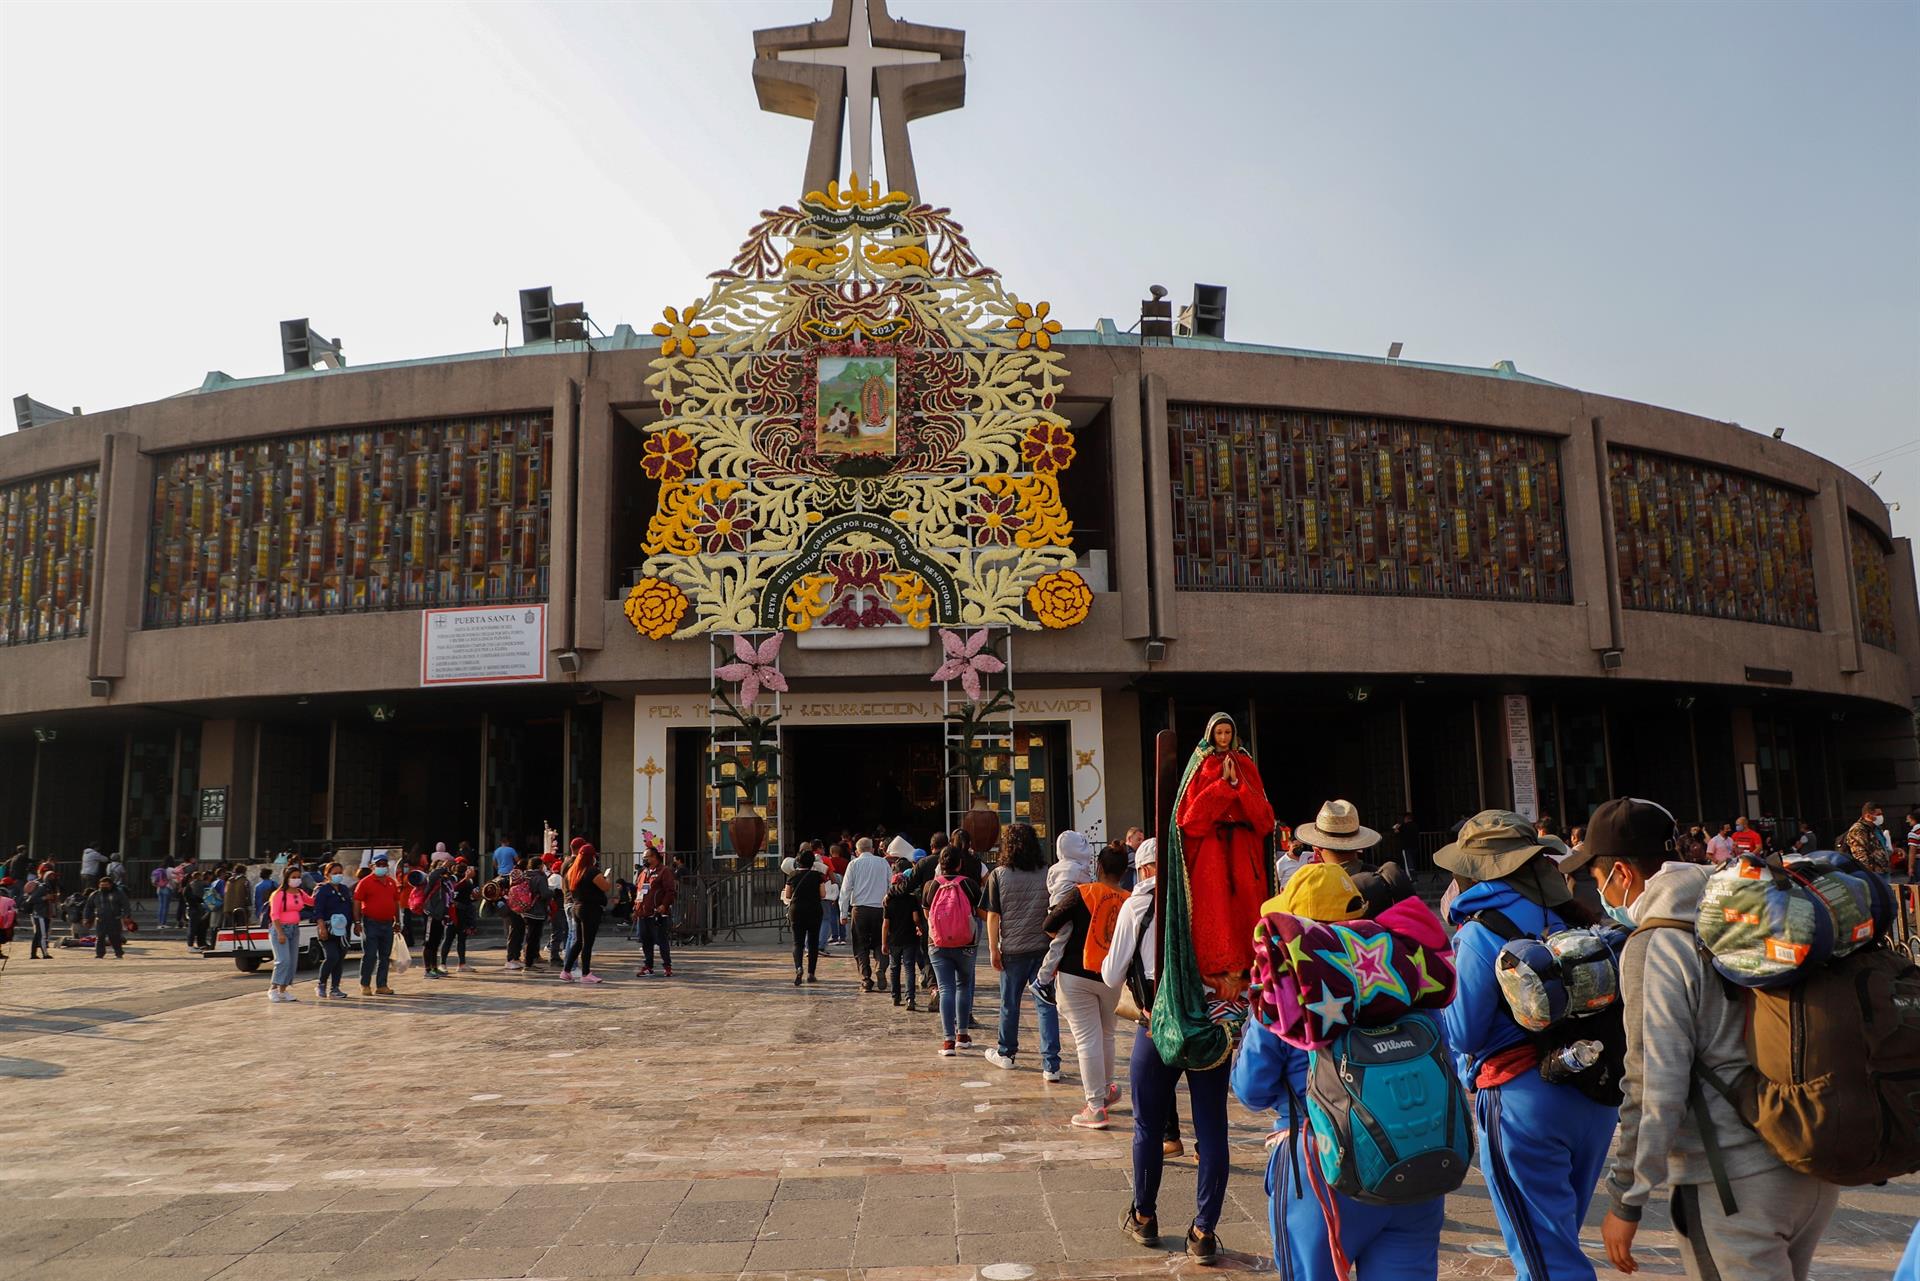 Este 2022 finalmente se llevará a cabo el peregrinaje a la Basílica de Guadalupe totalmente presencial.
(Foto: EFE)